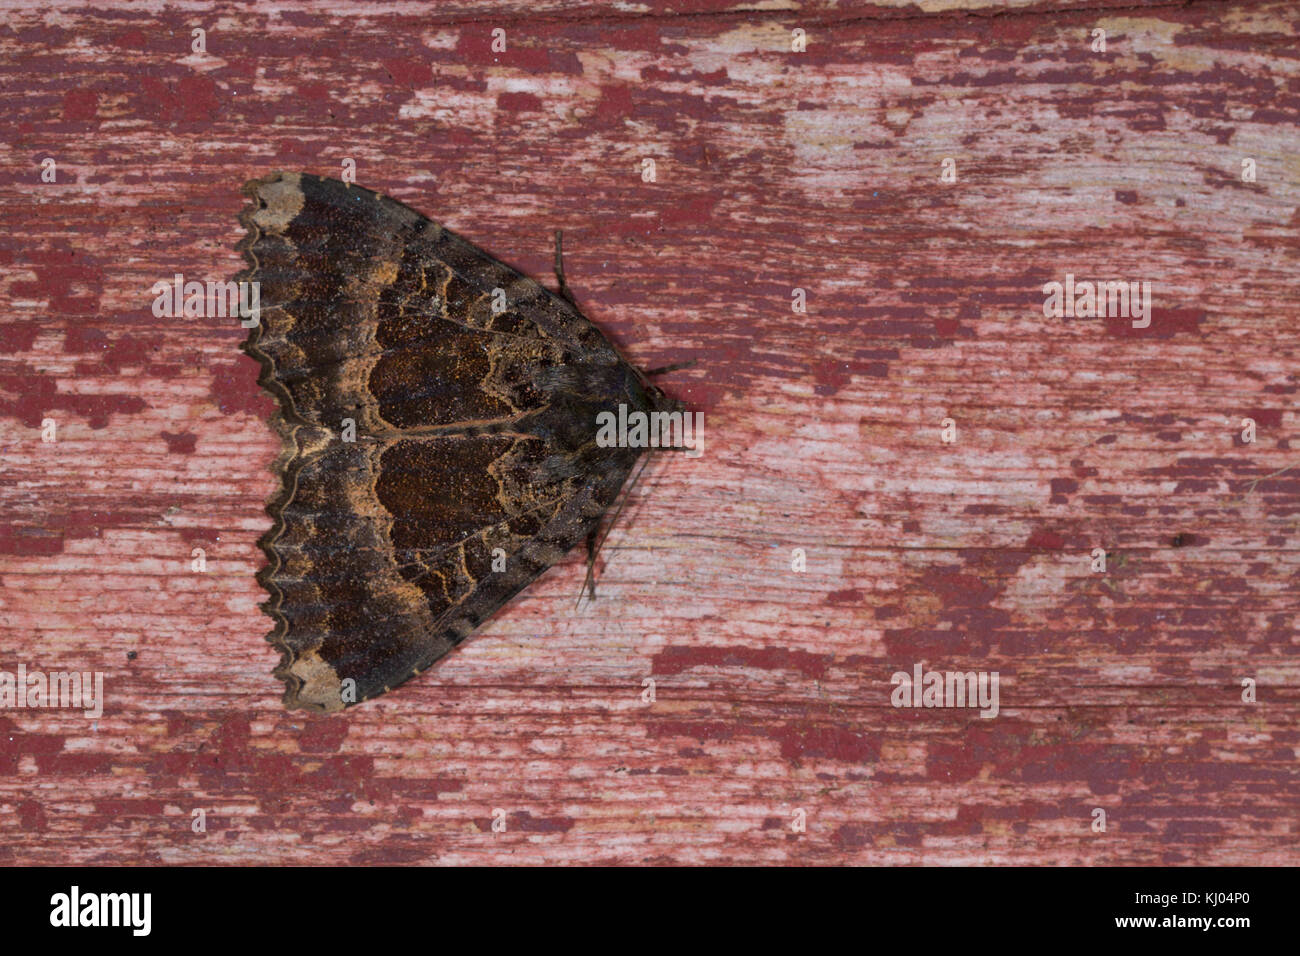 Vieille Dame (Mormo maura) papillon adulte se percher sur de vieux bois peint. Powys, Pays de Galles. Juillet. Banque D'Images